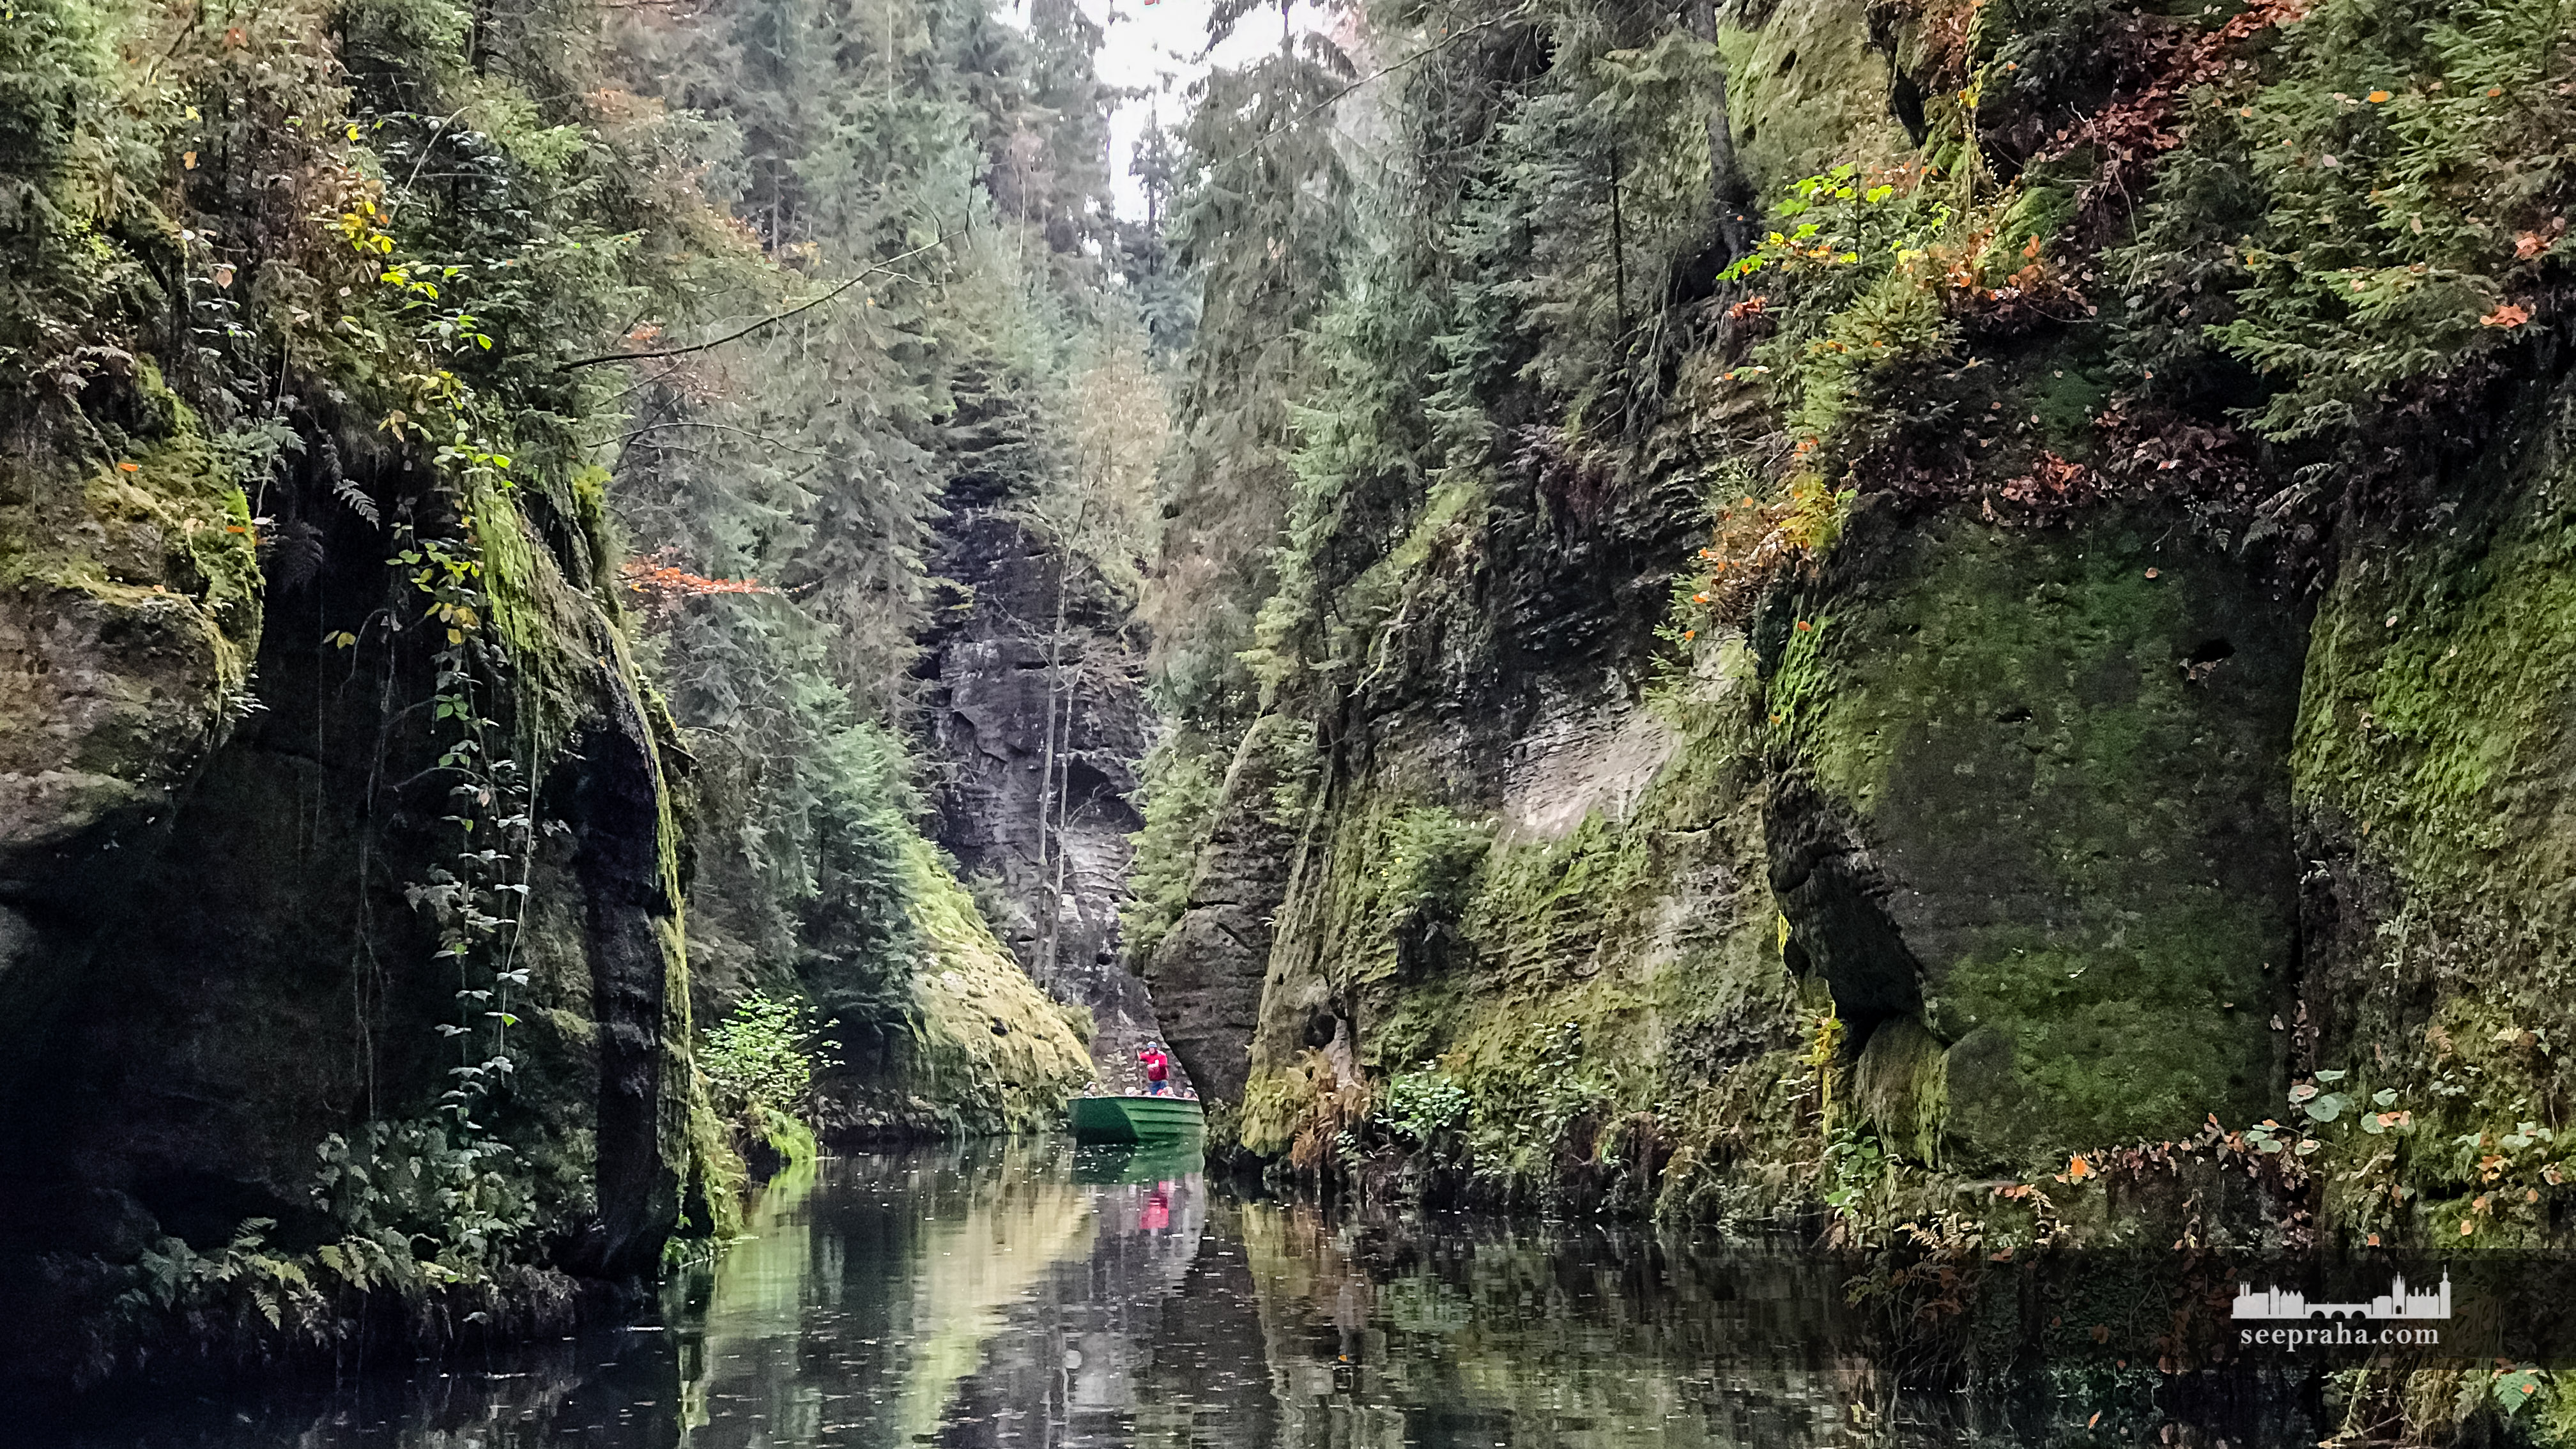 Une promenade romantique en barque sur la rivière Kamenice dans les gorges Edmond, Parc national de la Suisse bohémienne, République tchèque